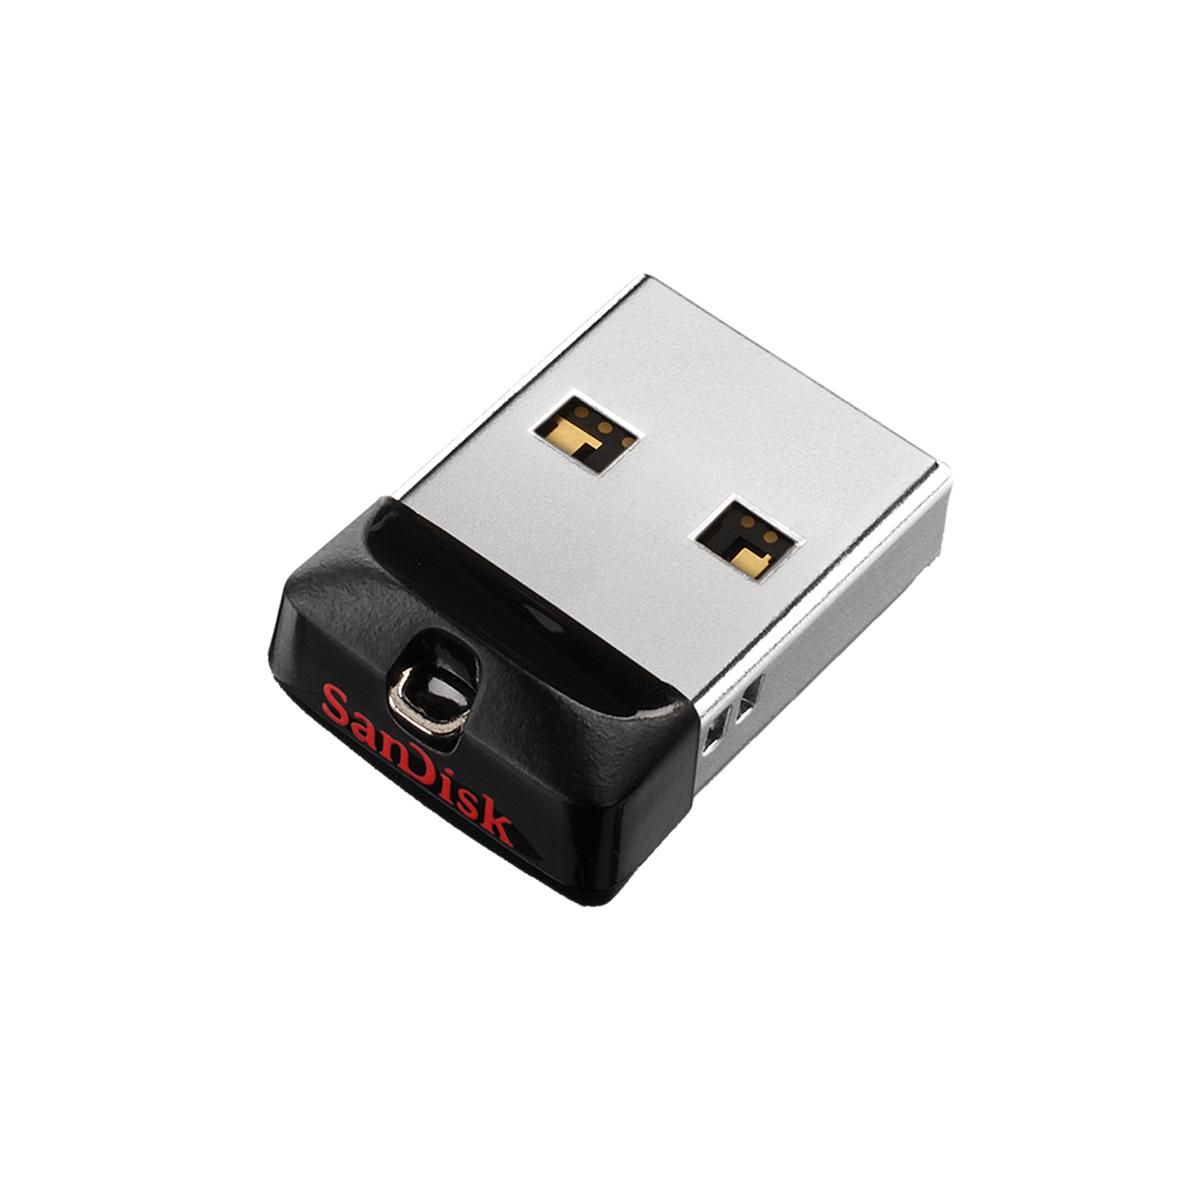 239688_USB-Stick (16 GB)_Geschwindigkeitswarnanlagen.png_webshop.jpg